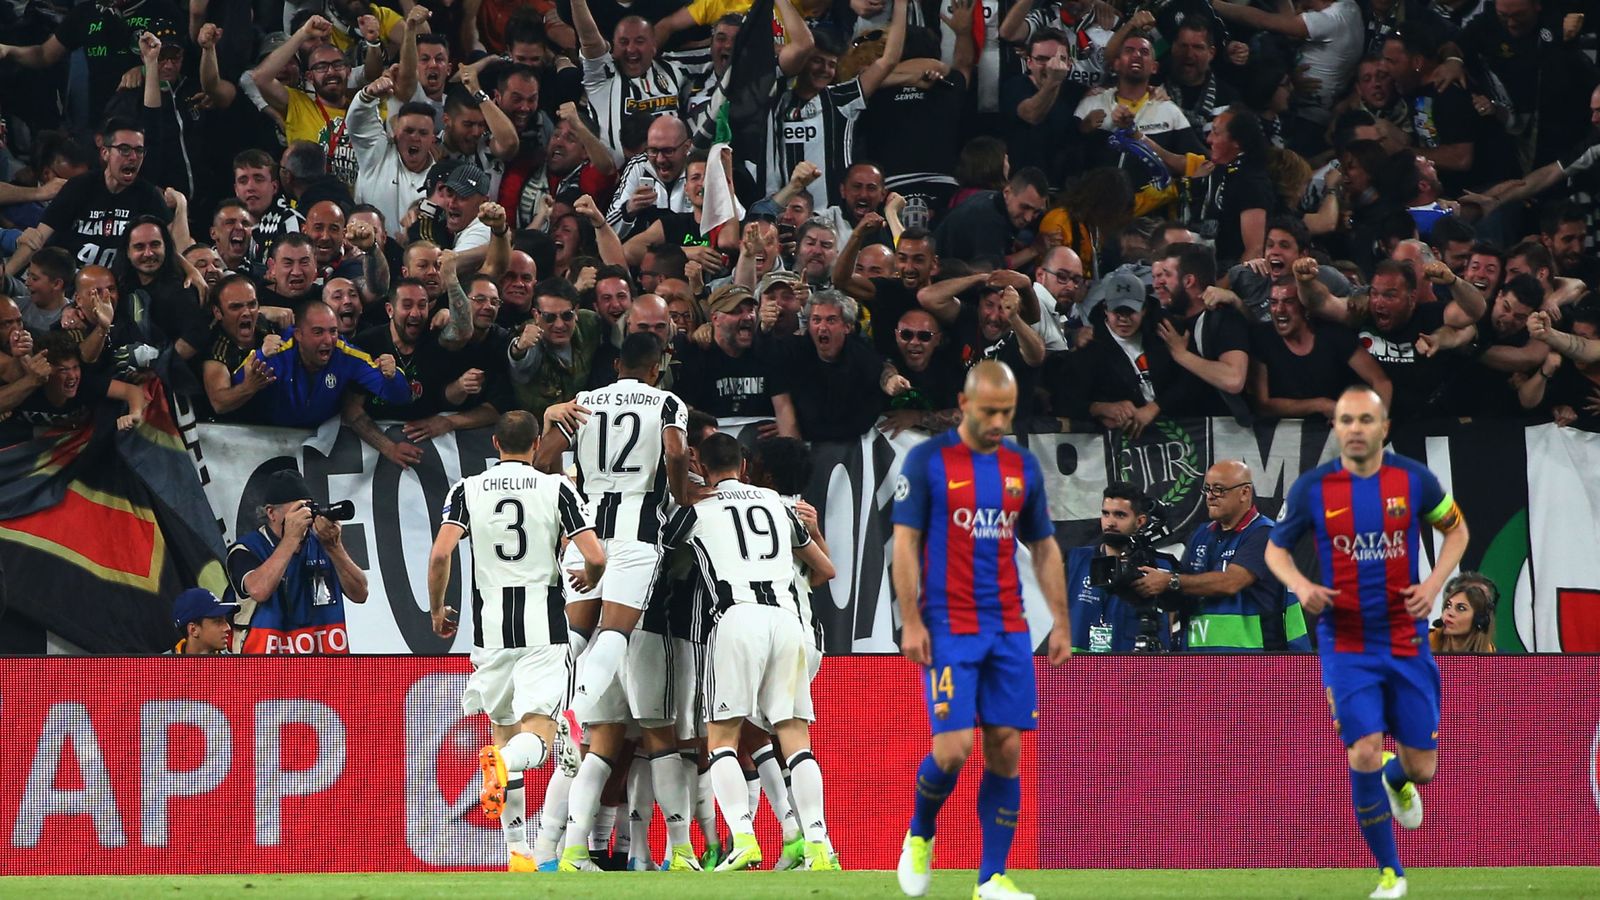 Foto: Mascherano, en el centro, cariacontecido tras uno de los goles de Dybala en el Juventus Stadium. (Reuters)